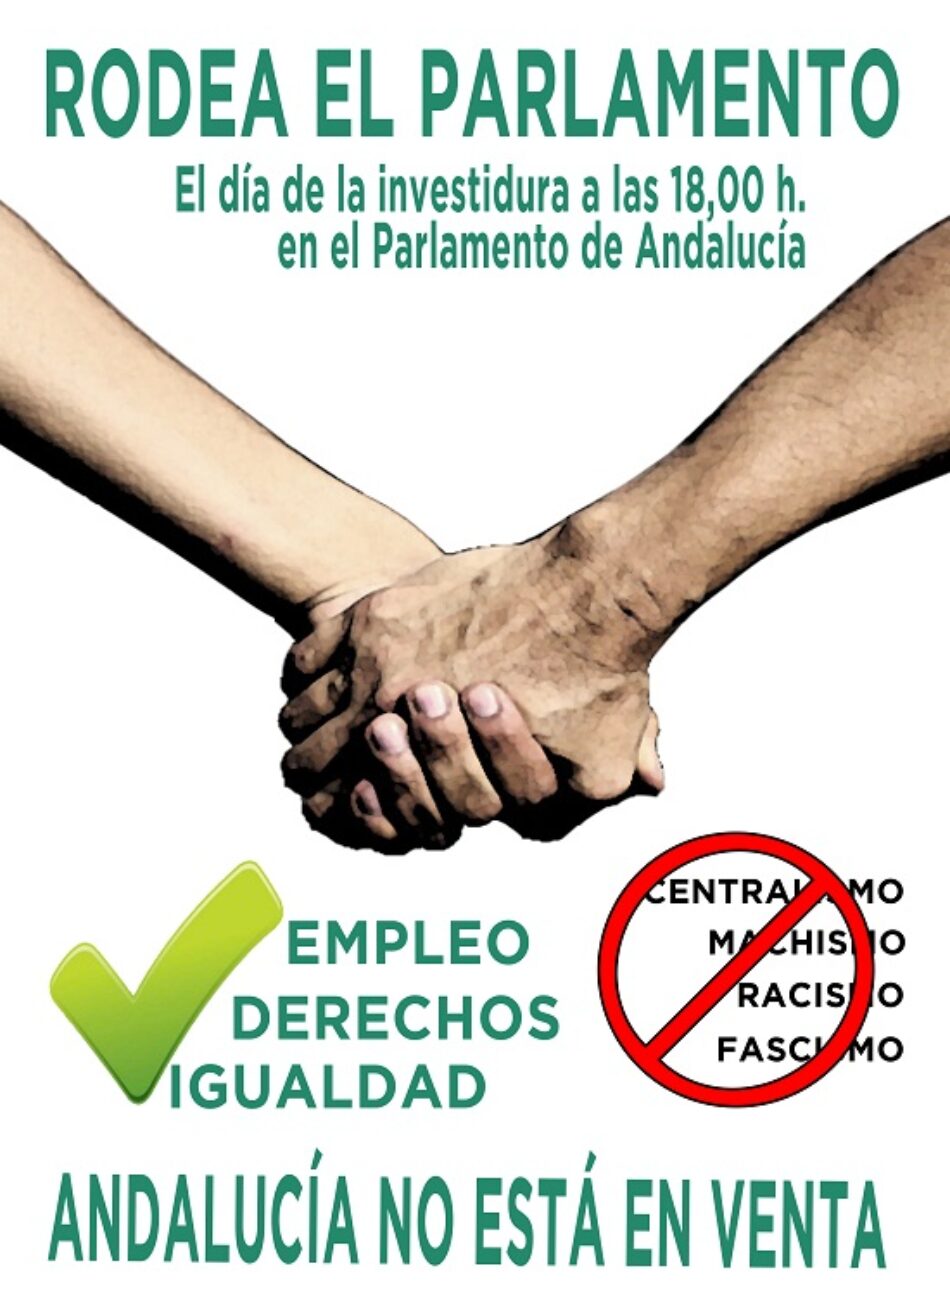 El Sindicato Andaluz de Trabajadores/as (SAT) convoca un “Rodea el Parlamento” el día de la investidura